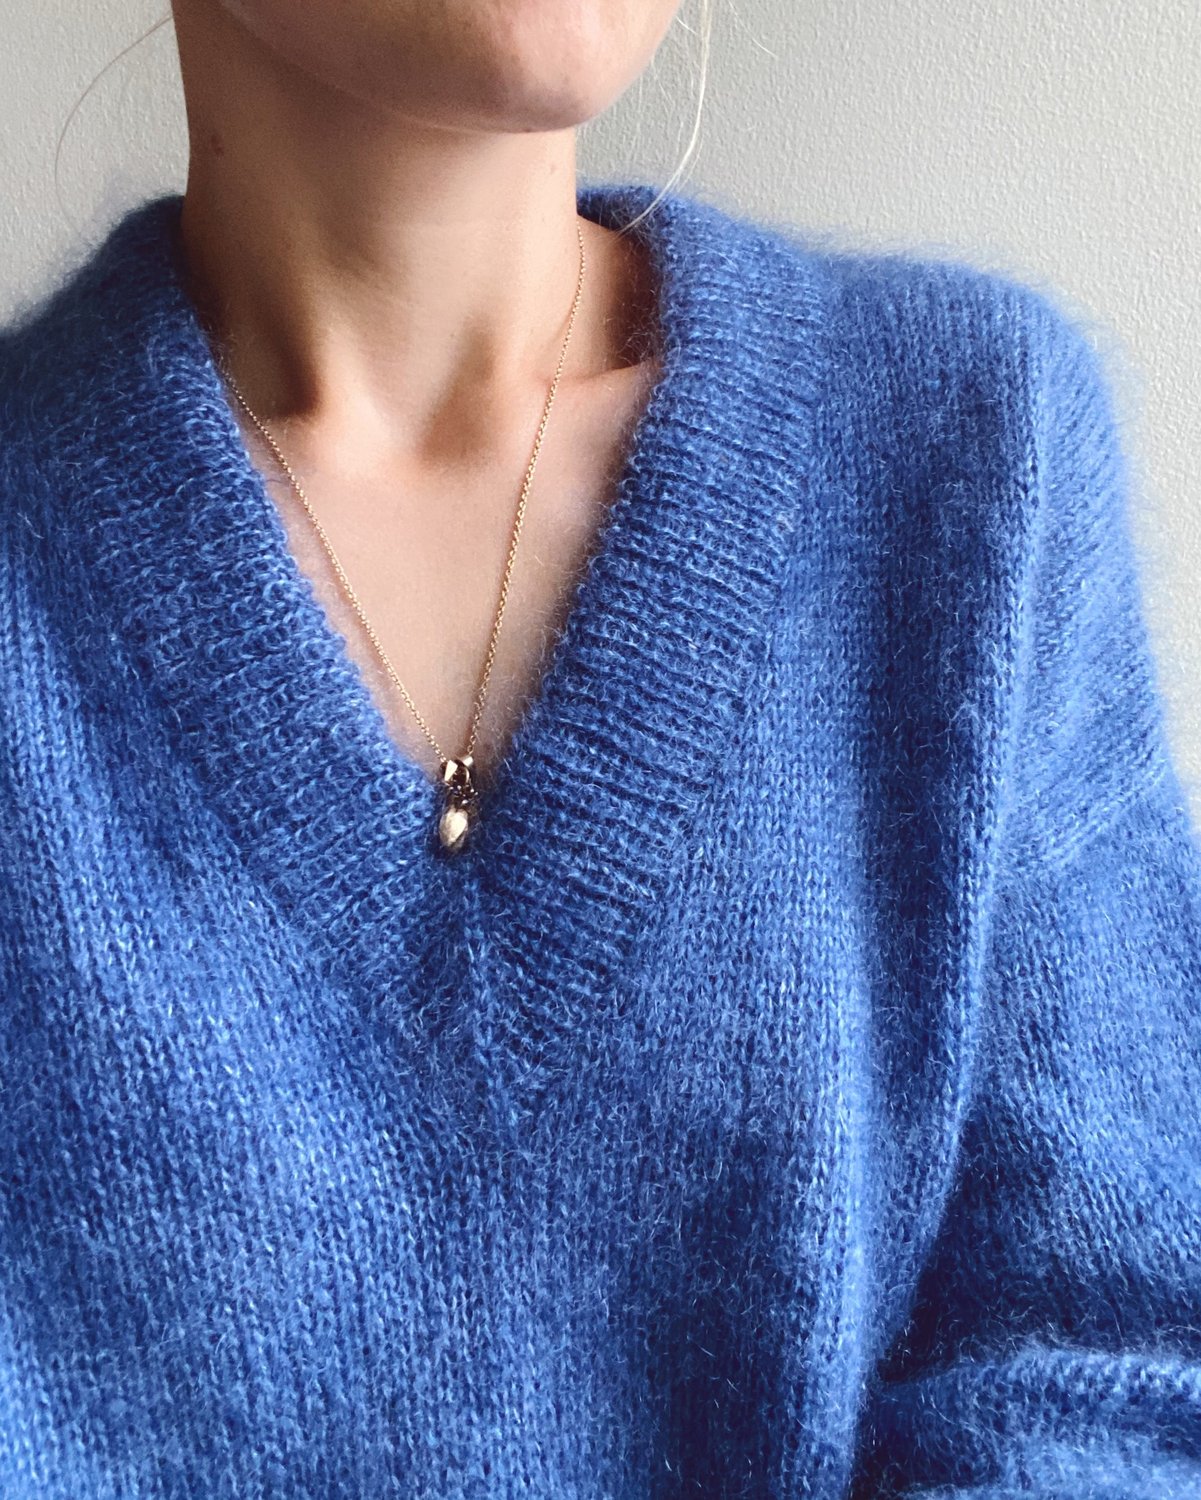 Strikkeopskrift til Stockholm Sweater V-neck af PetiteKnit